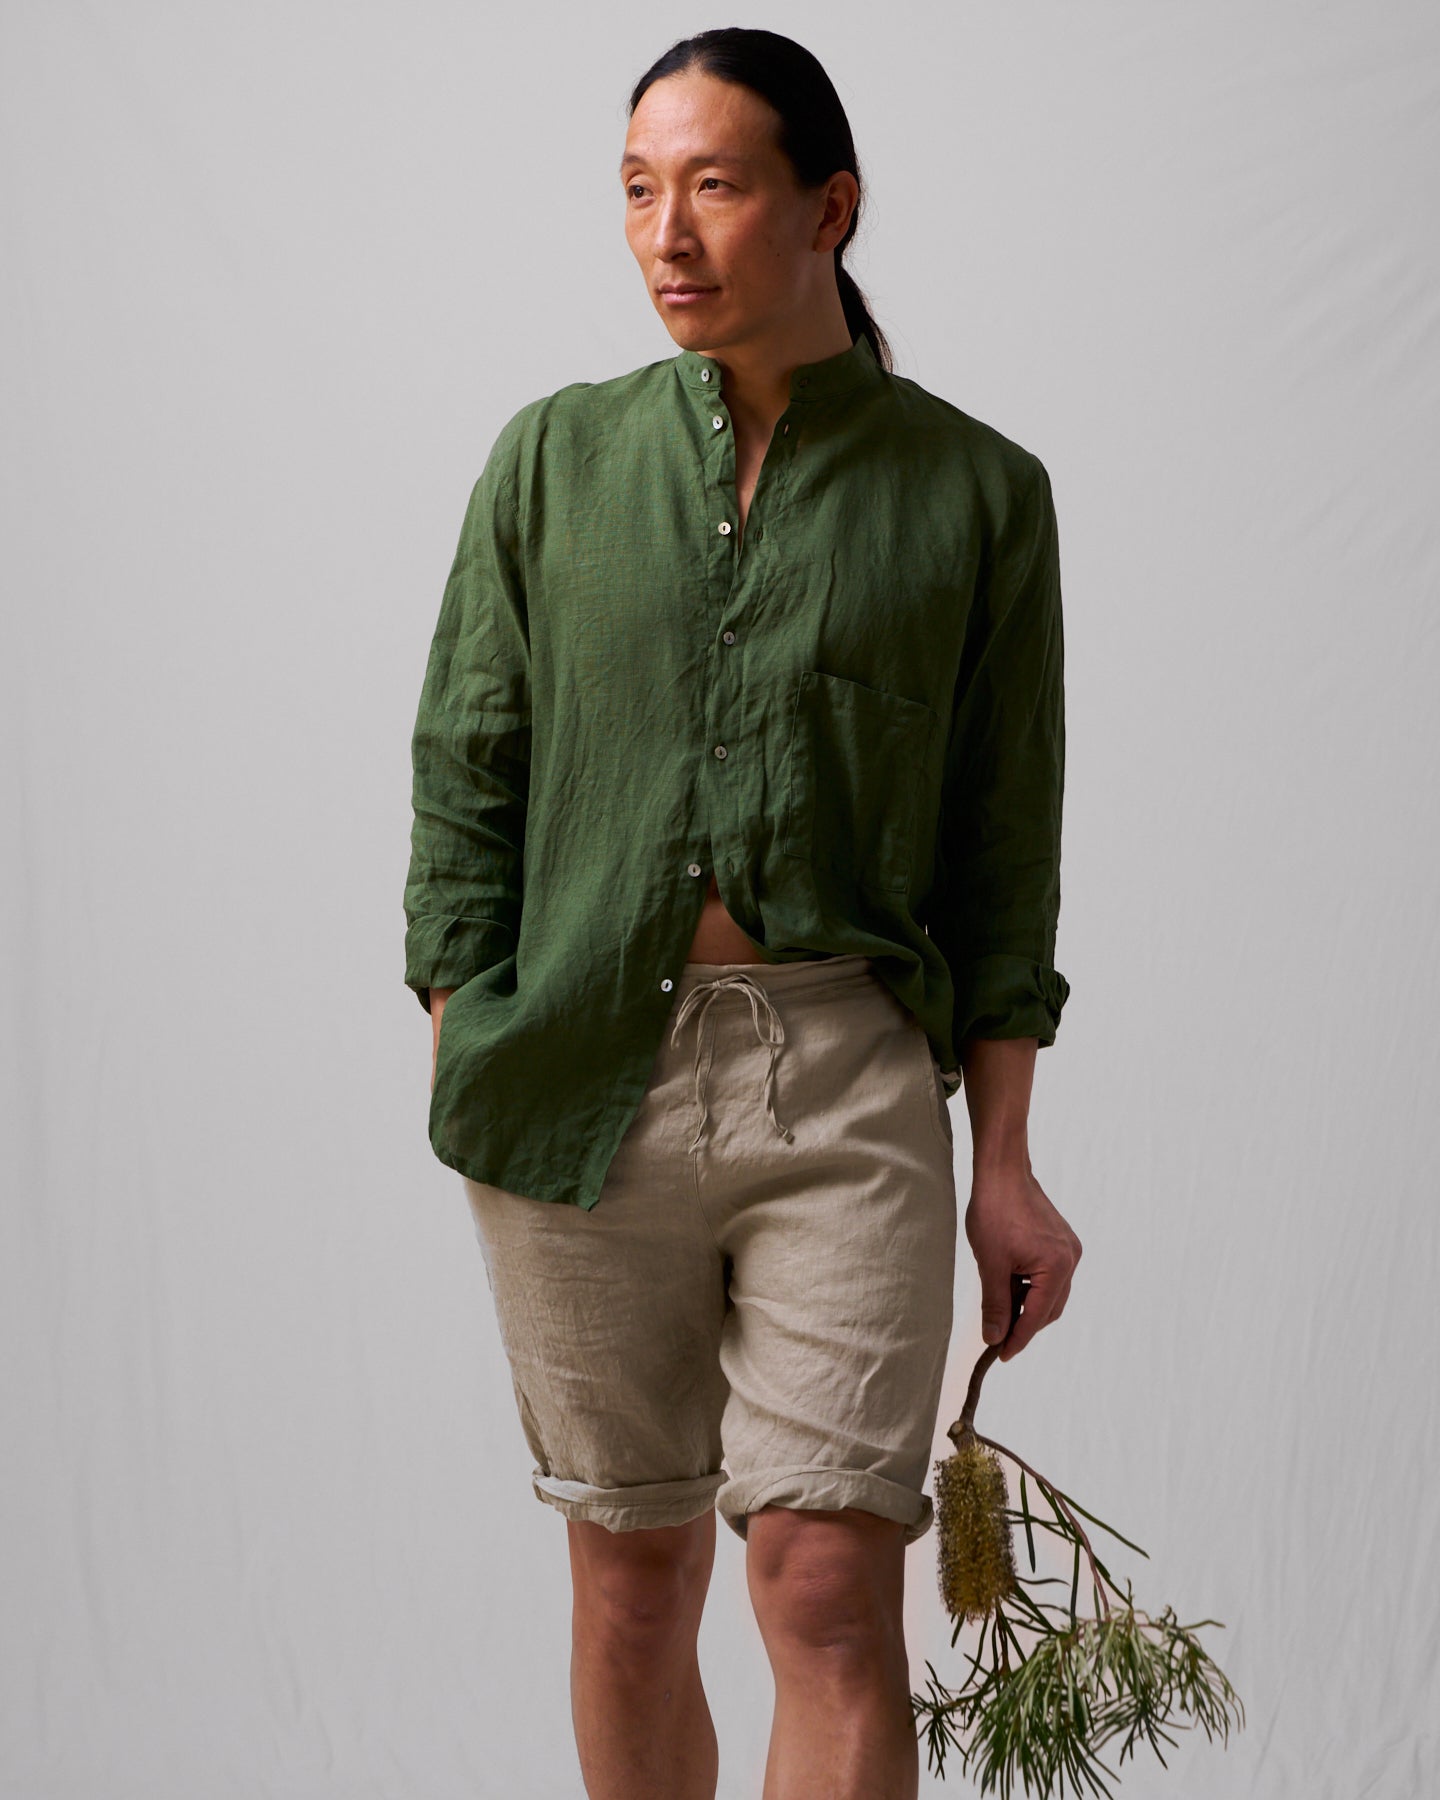 Rymlig murarskjorta i härligt linne (unisex) – skogsgrön